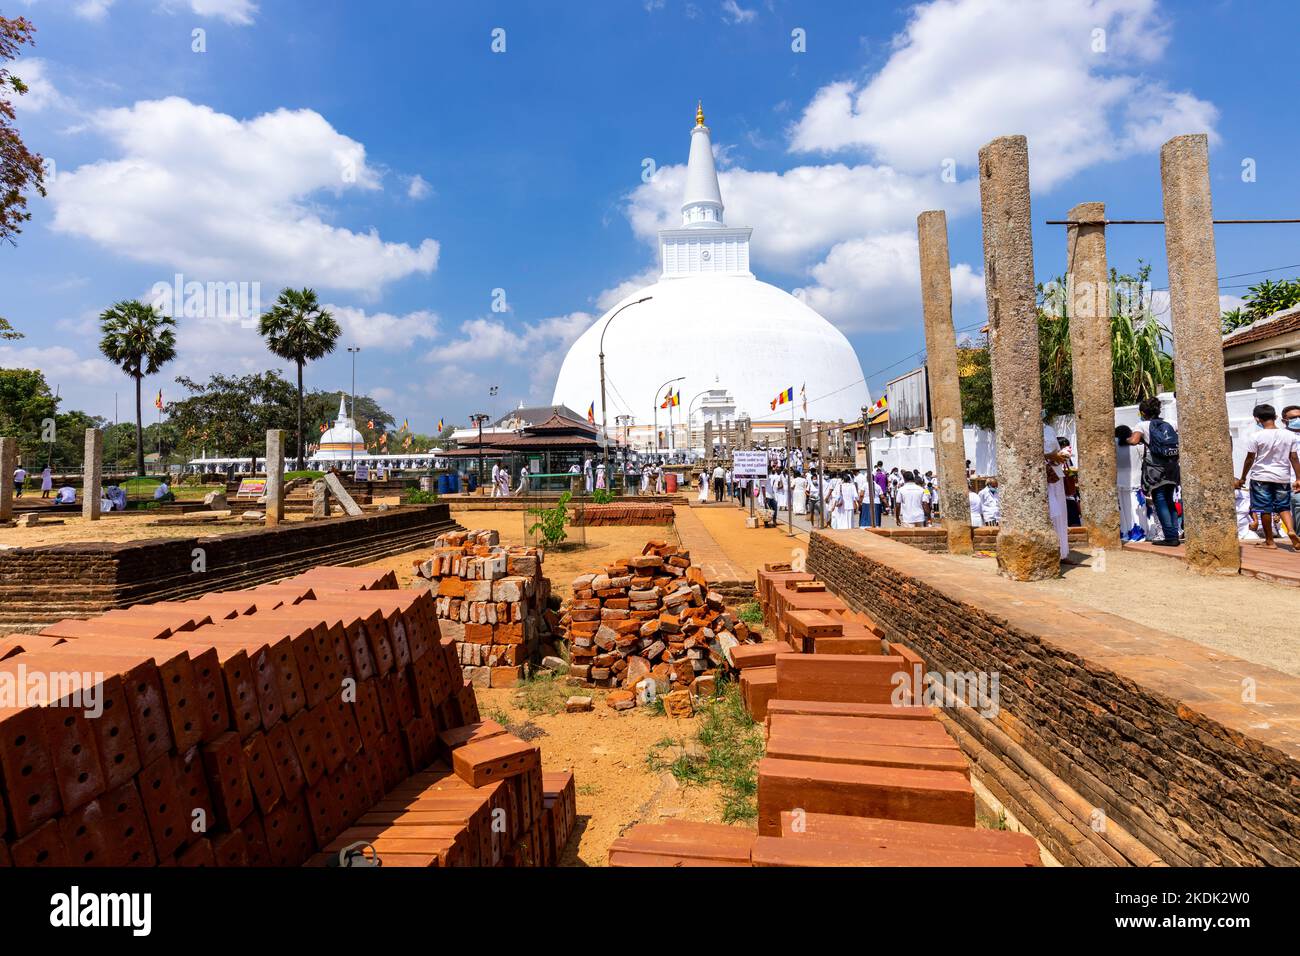 Ruwanweliseya Dagoba buddhist stupa tourist and pilgrimage site. Anuradhapura, Sri Lanka. Stock Photo